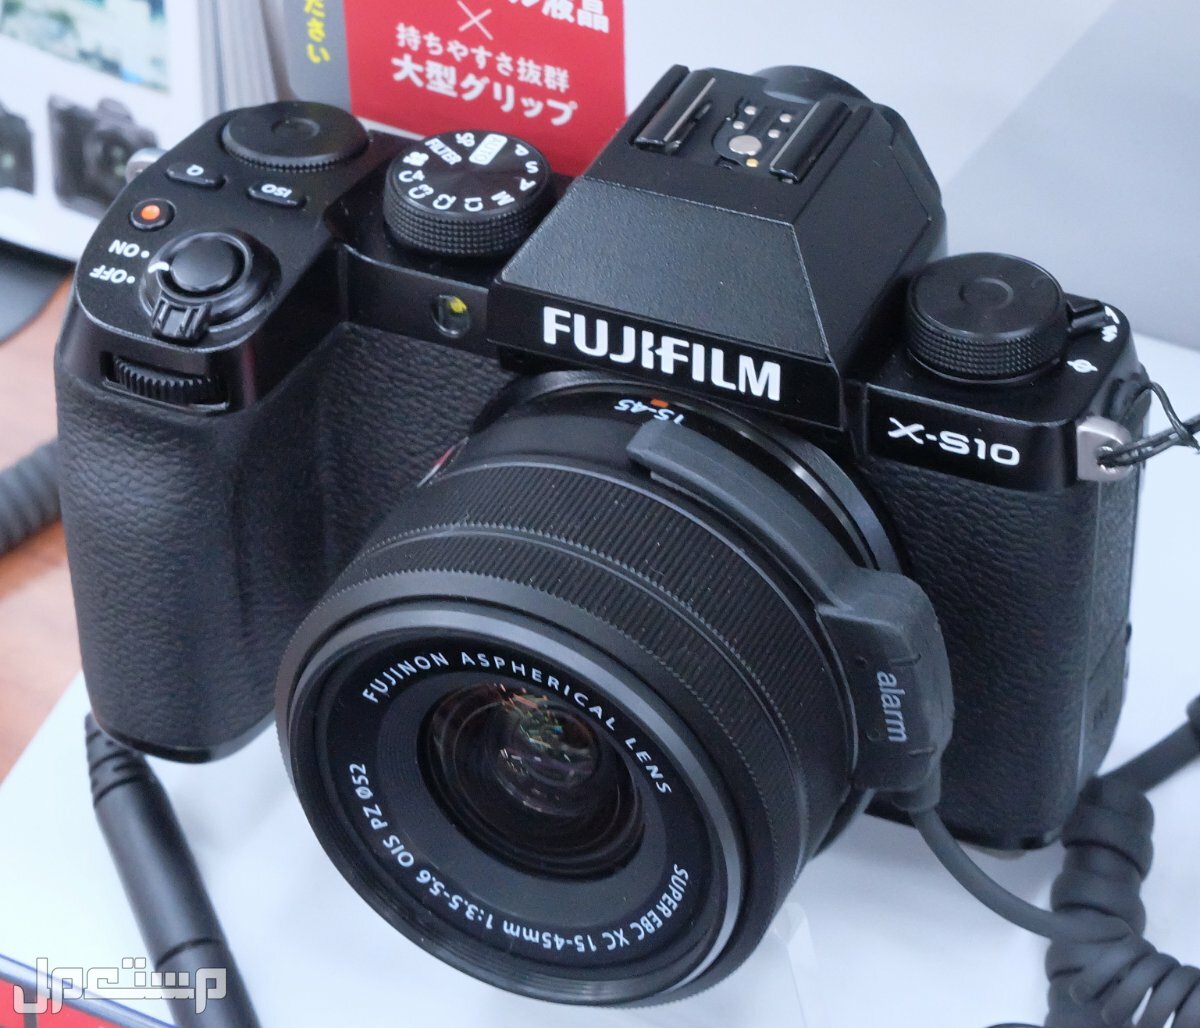 مواصفات ومميزات وعيوب كاميرات التصوير فوجي فيلم في قطر مواصفات كاميرا Fujifilm X-S10